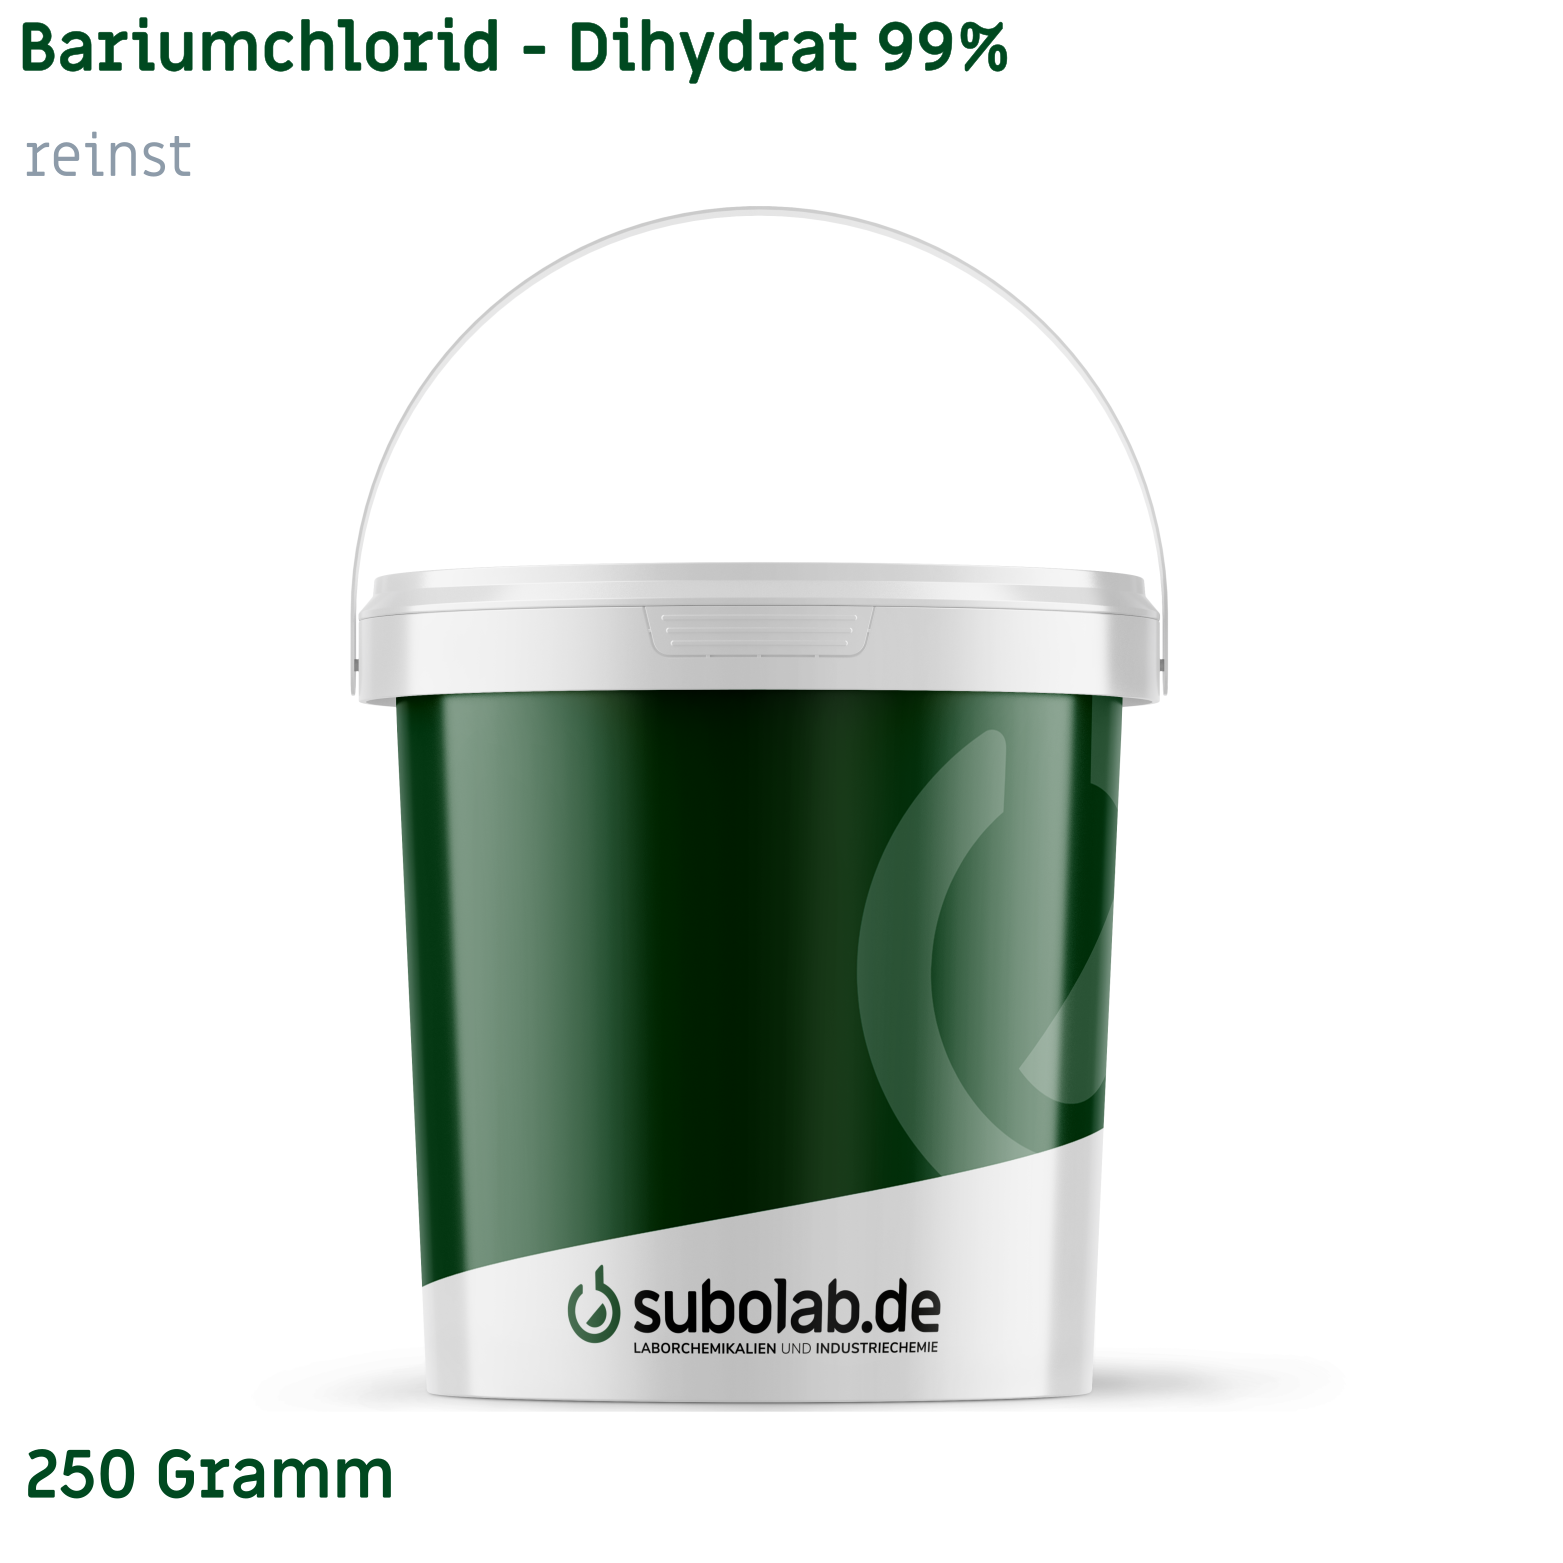 Bild von Bariumchlorid - Dihydrat 99% reinst (250 Gramm)